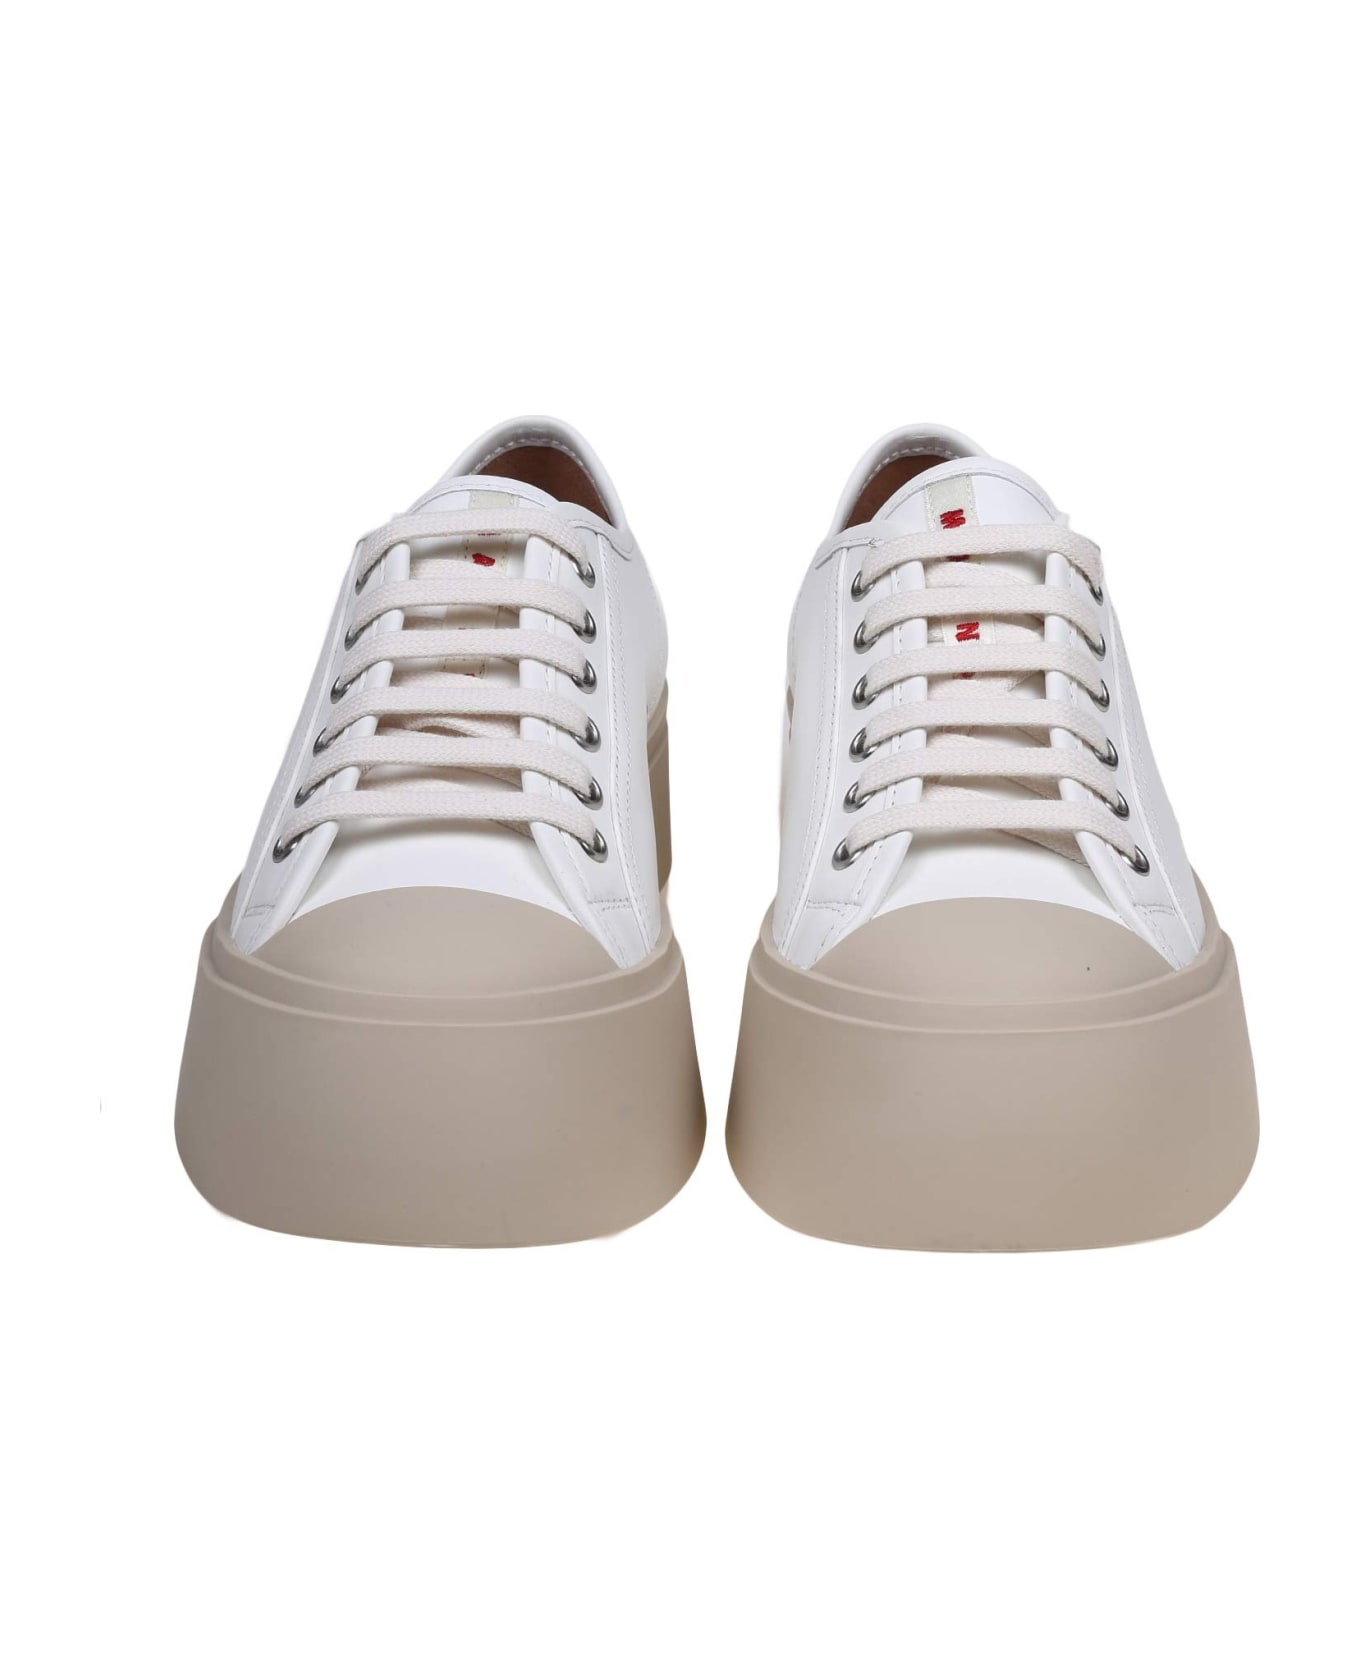 Marni Pablo Sneakers In White Nappa - WHITE